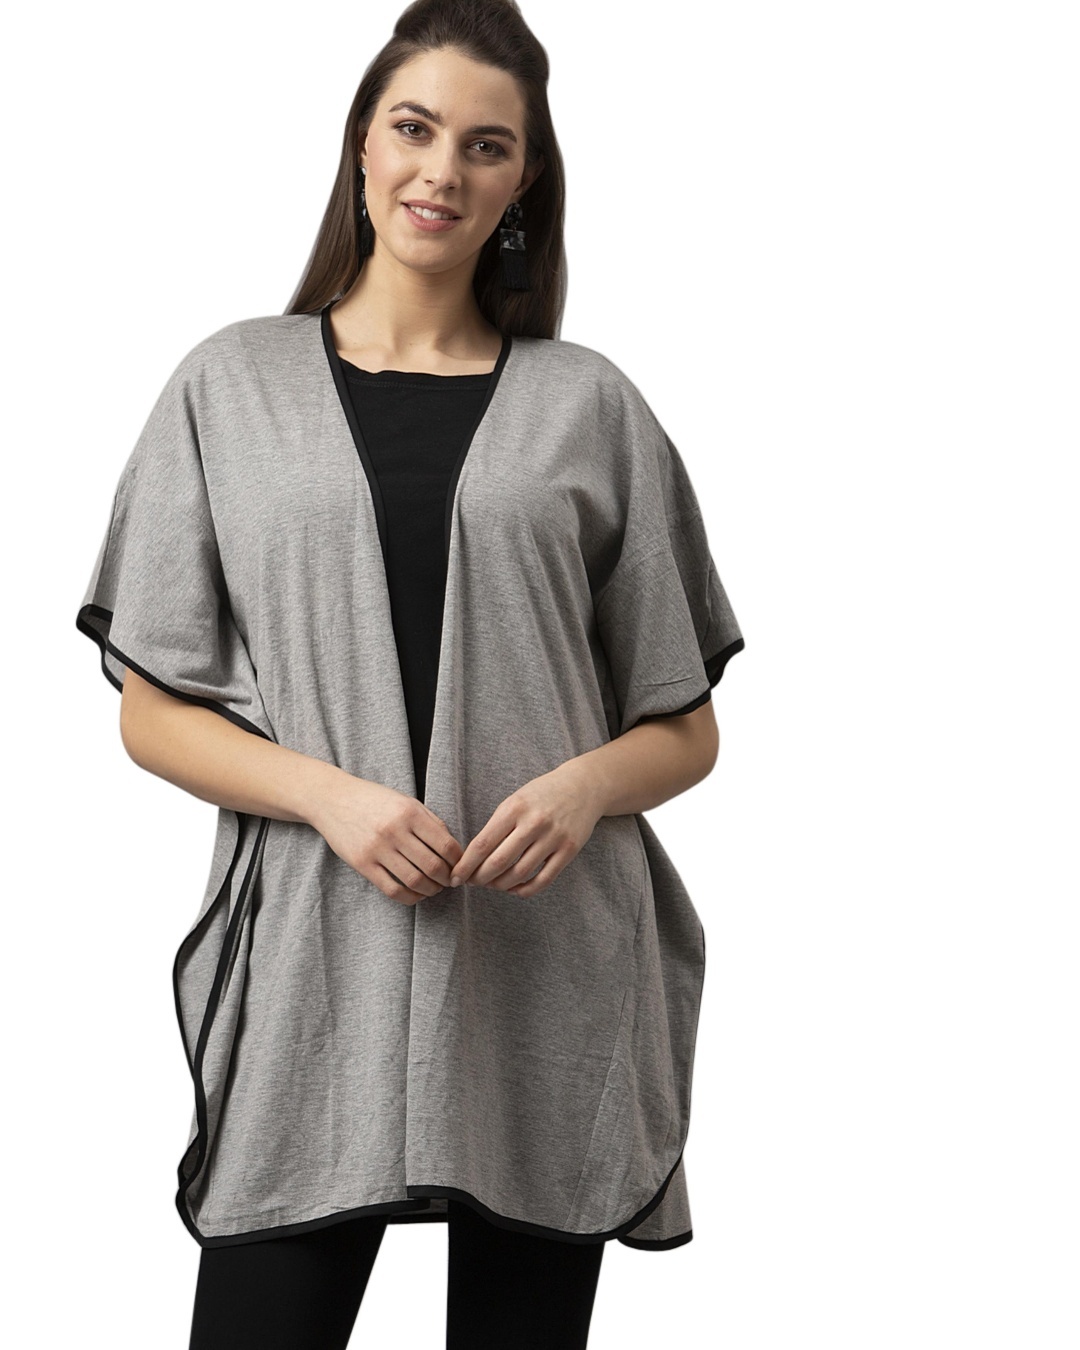 Buy Women's Grey Shrug for Women Online at Bewakoof